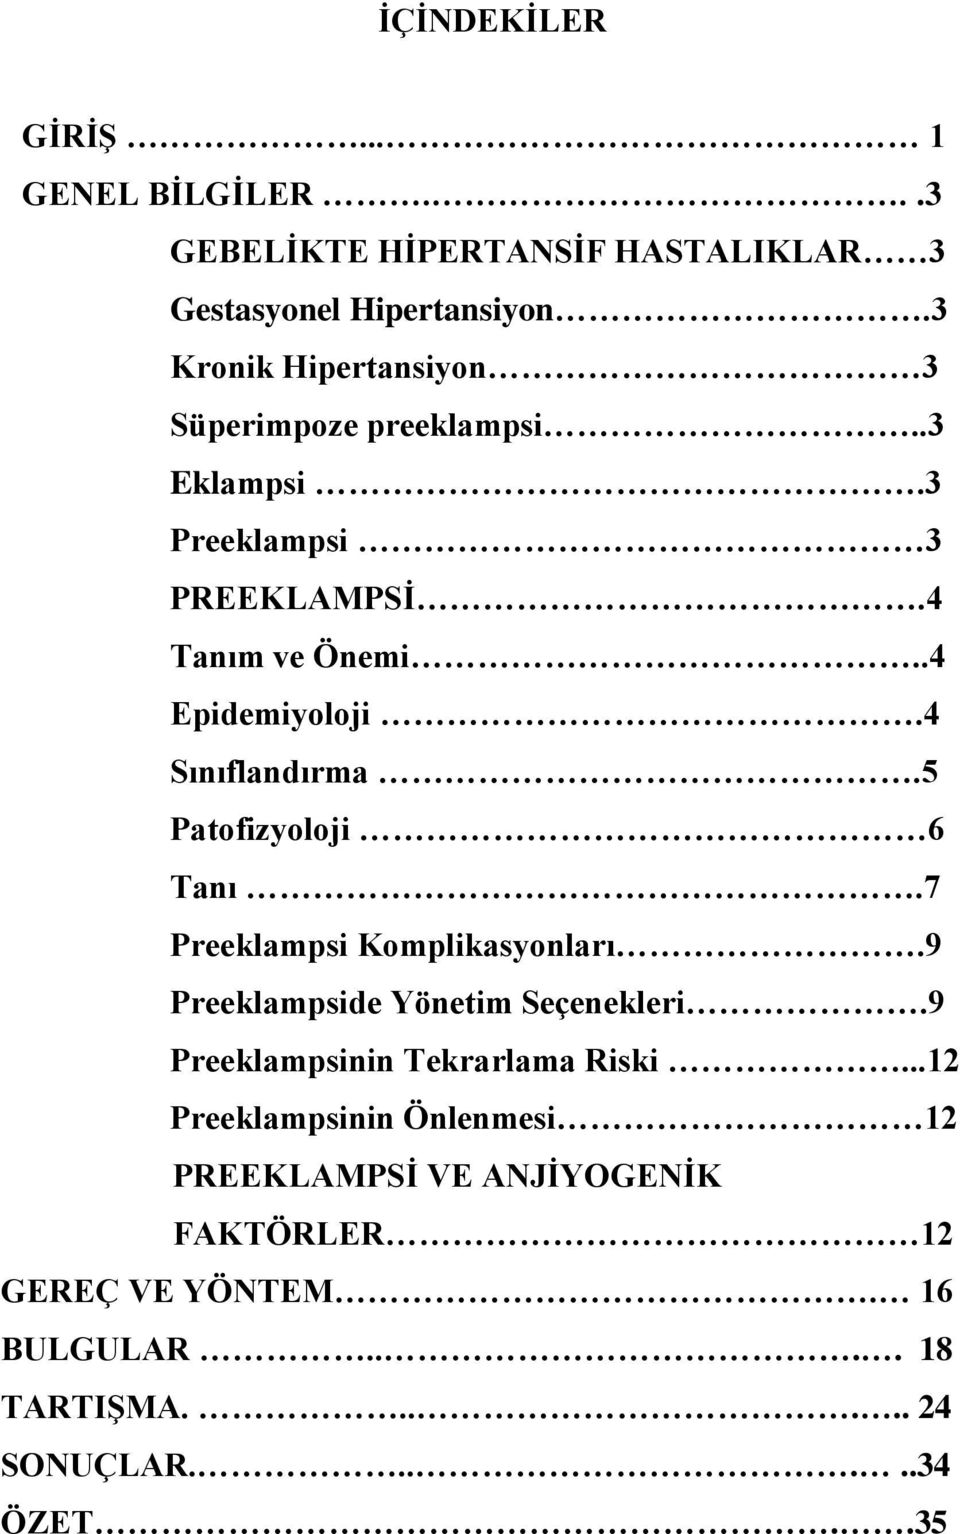 4 Sınıflandırma.5 Patofizyoloji 6 Tanı.7 Preeklampsi Komplikasyonları.9 Preeklampside Yönetim Seçenekleri.